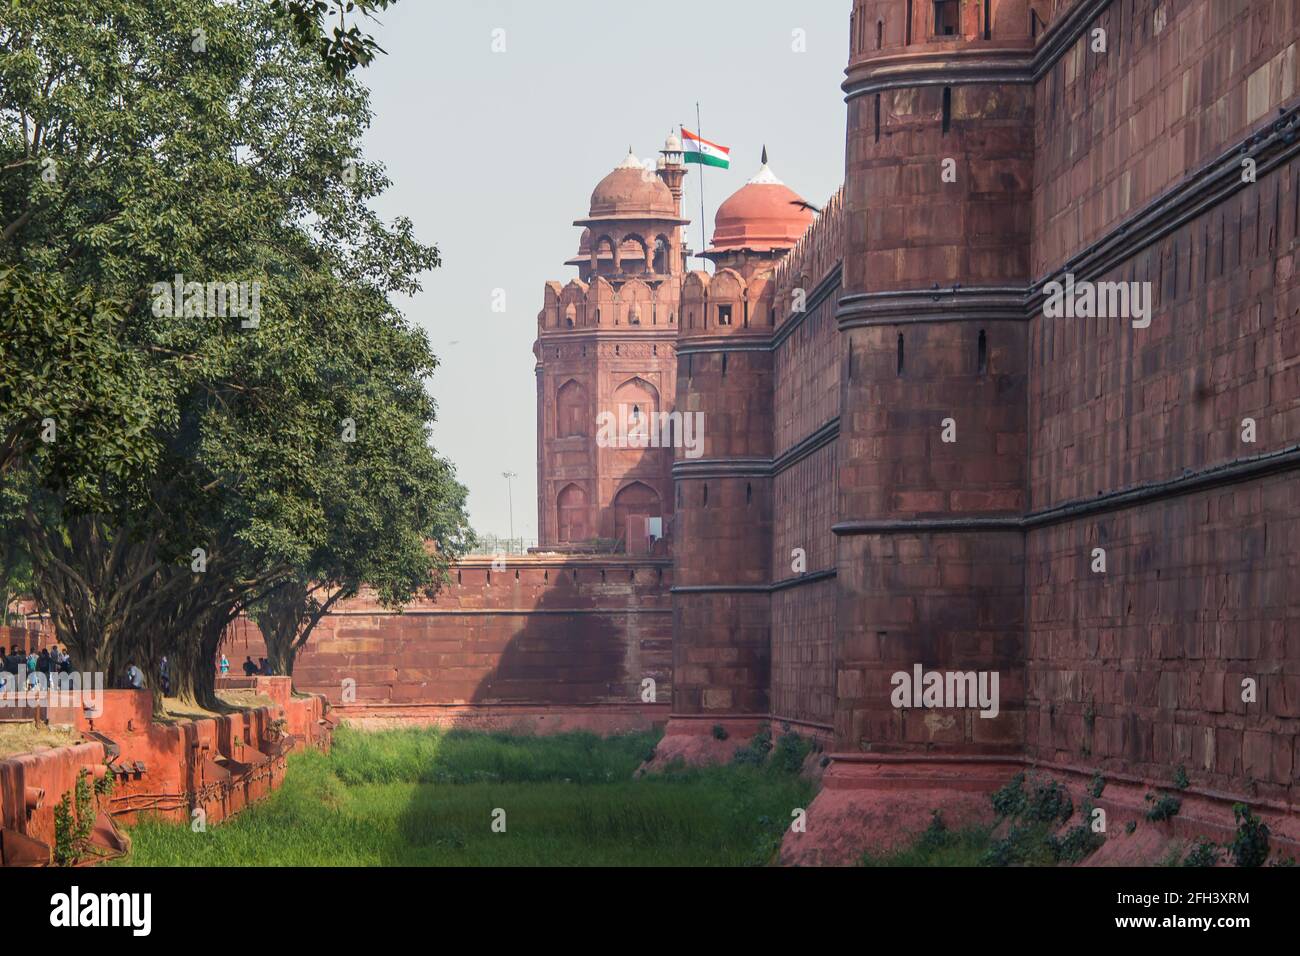 Ein Blick auf die Vordermauern und den Graben des Roten Fort im Sektor Alt-Delhi der indischen Hauptstadt Neu-Delhi. Die Wände sind 18 Meter hoch. Stockfoto